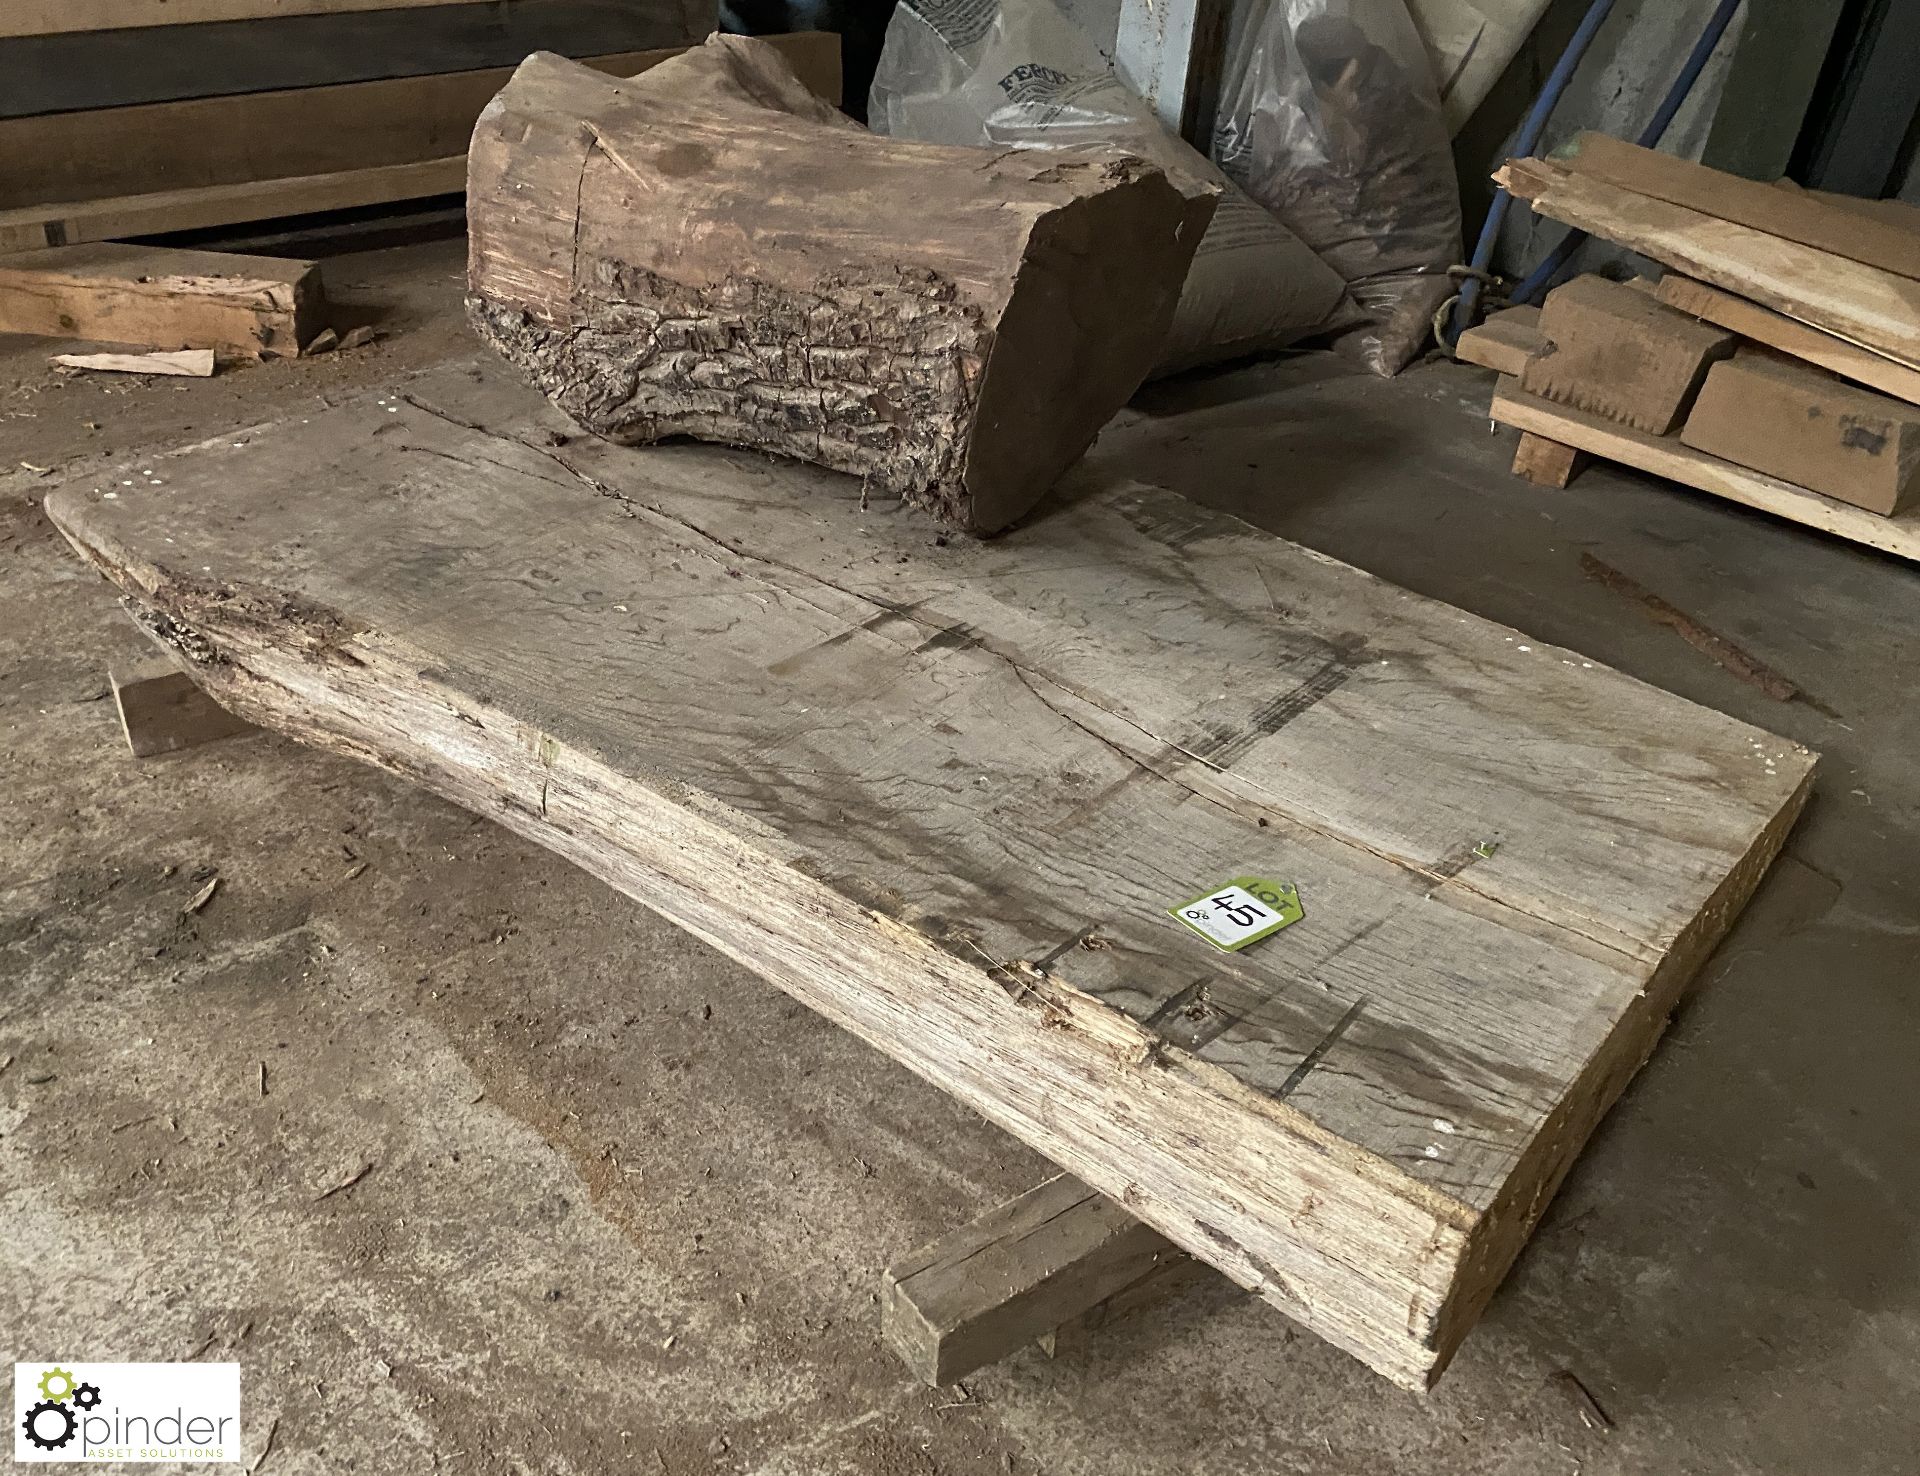 Air dried Oak Board, 1670mm x 1050mm x 220mm and air dried Oak Stump, 850mm x 450mm diameter